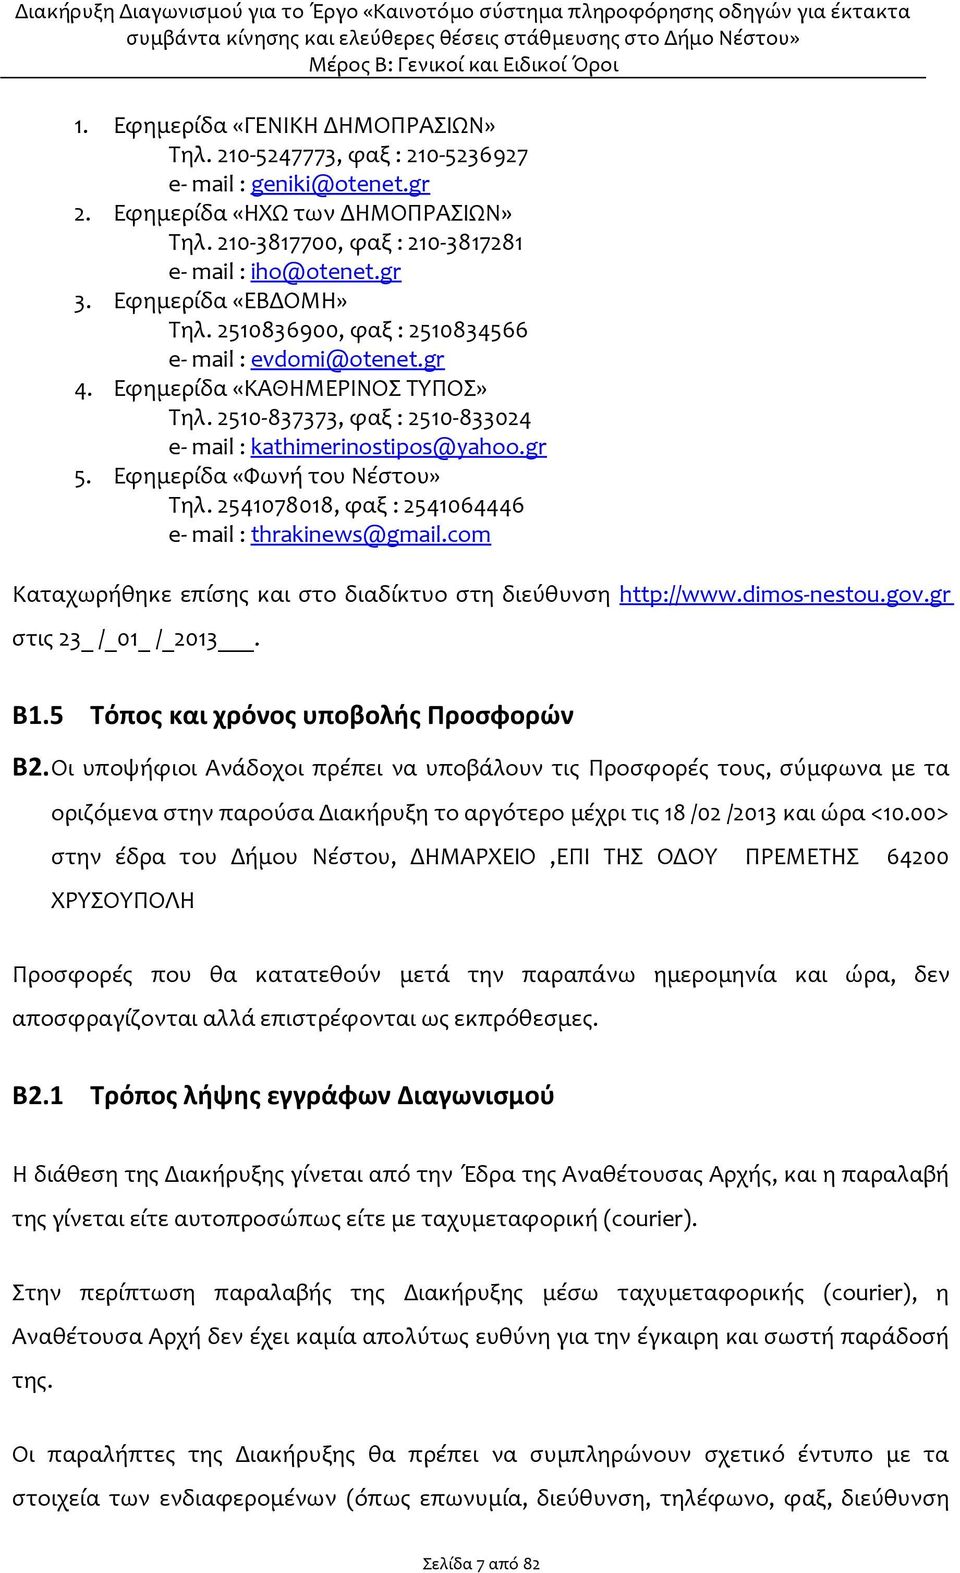 Εφημερίδα «Φωνή του Νέστου» Τηλ. 2541078018, φαξ : 2541064446 e- mail : thrakinews@gmail.com Καταχωρήθηκε επίσης και στο διαδίκτυο στη διεύθυνση http://www.dimos-nestou.gov.gr στις 23_ /_01_ /_2013.